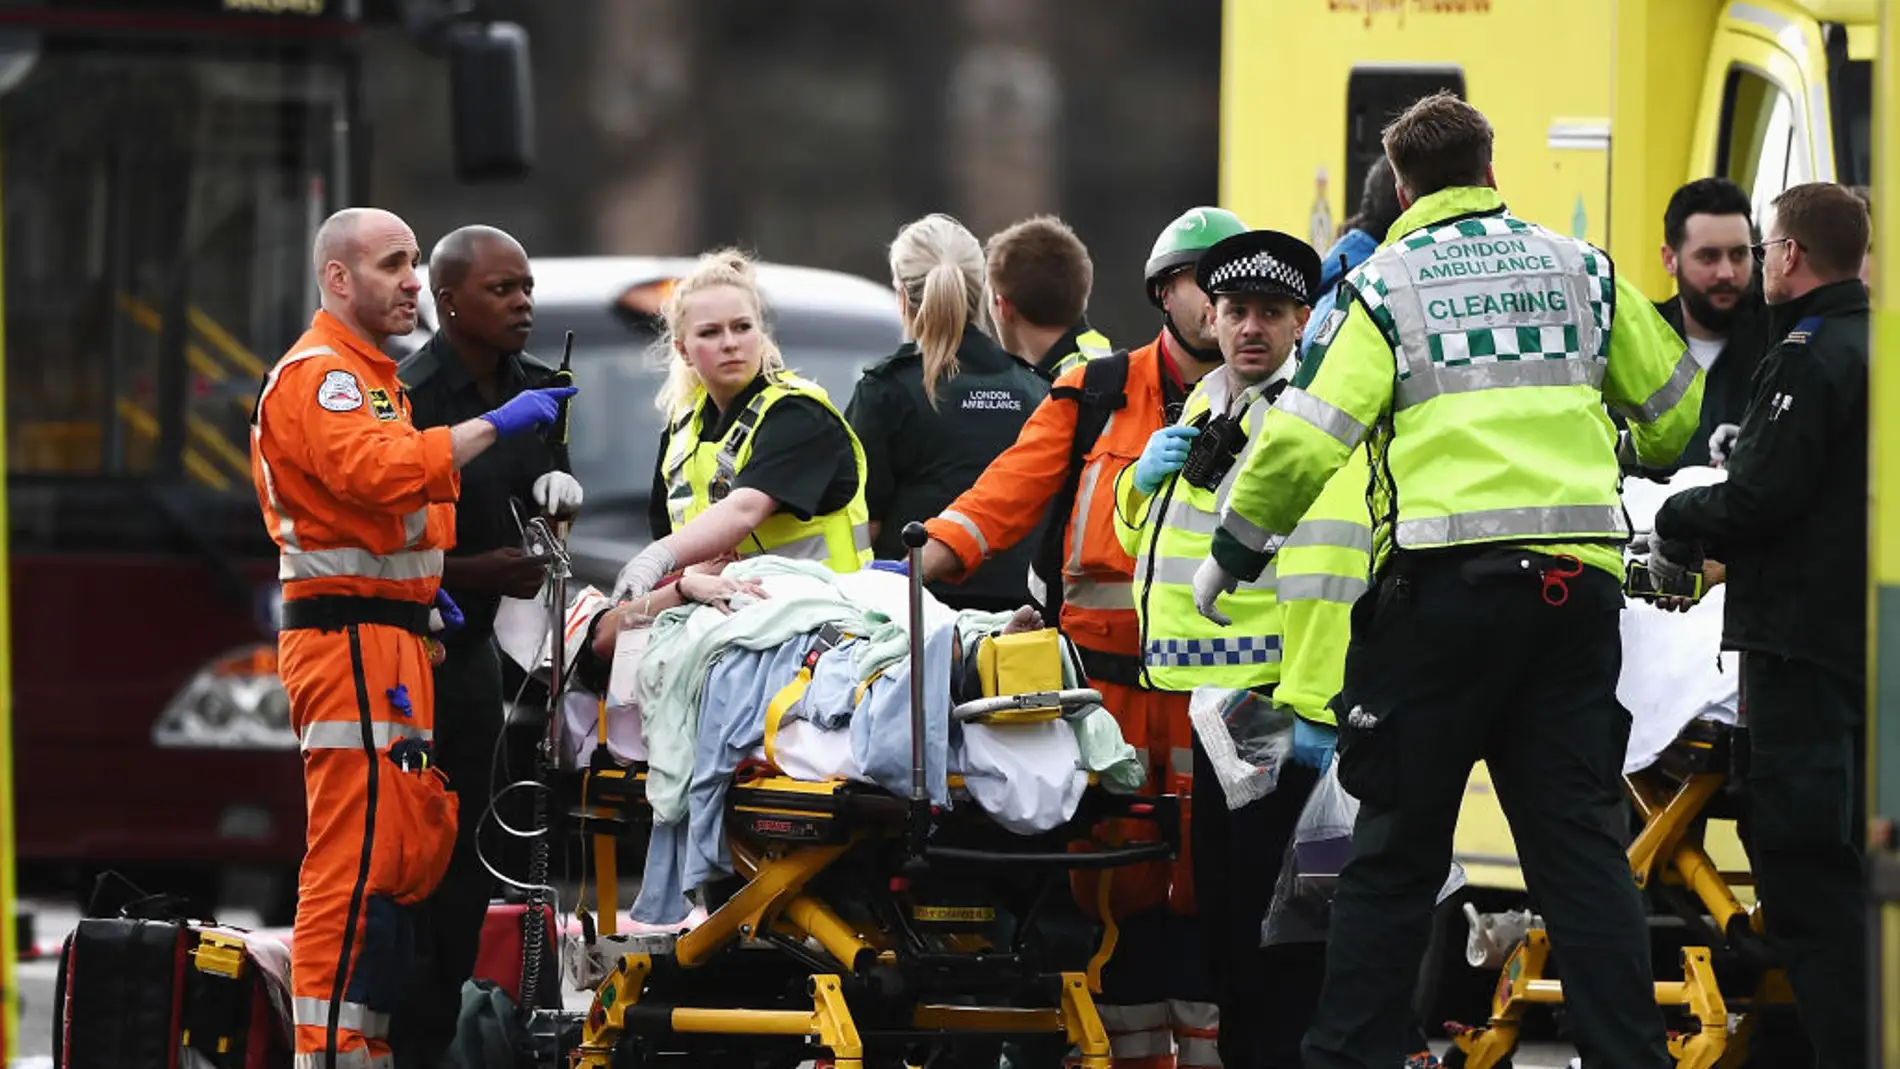 Los servicios de emergencia atienden a un herido en los alrededores del Parlamento británico, en Londres